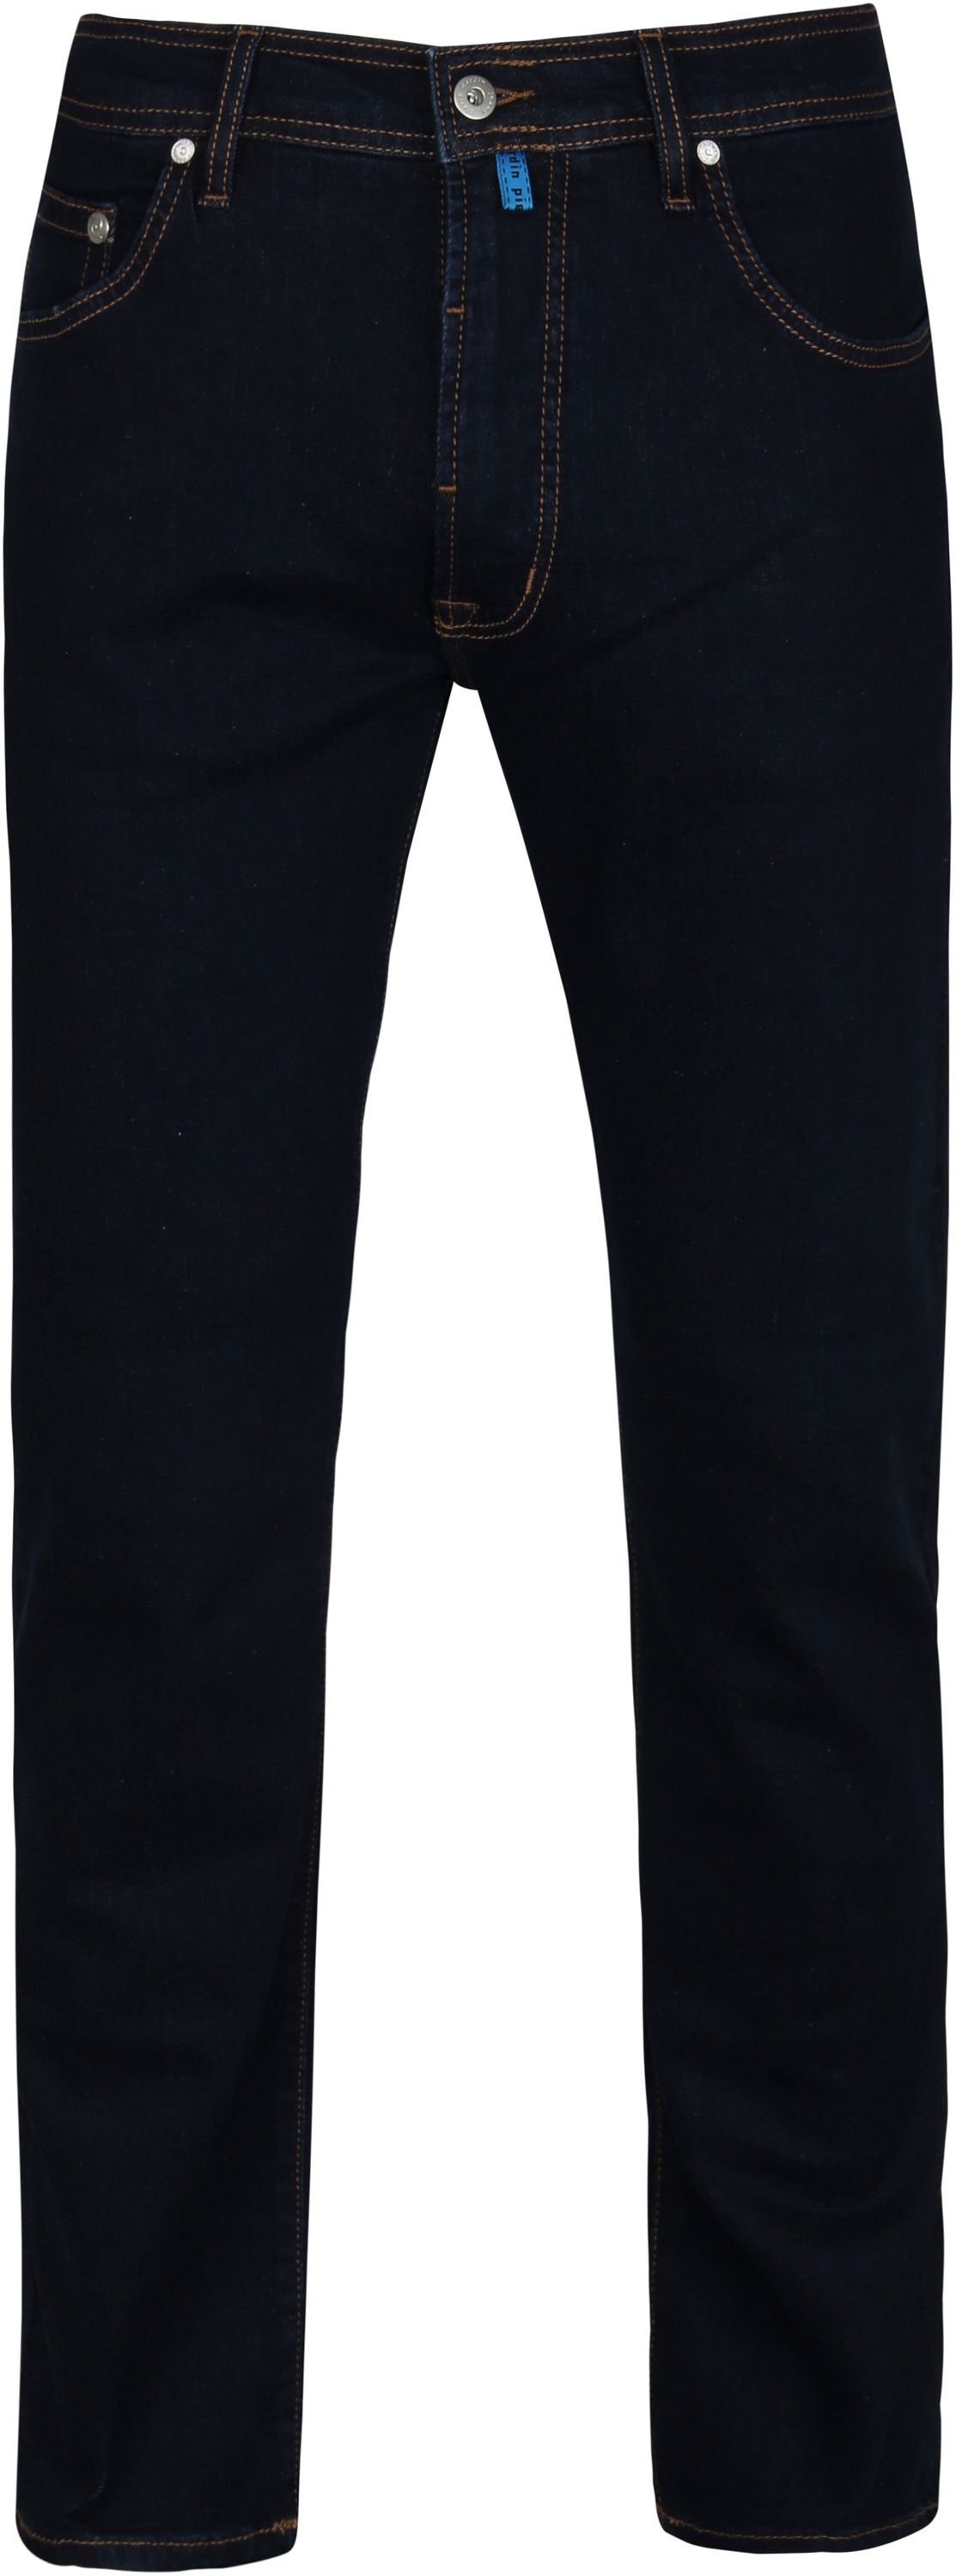 Pierre Cardin 5 Pocket Denim Jeans Stonewash Dark Dark Blue Blue size W 32